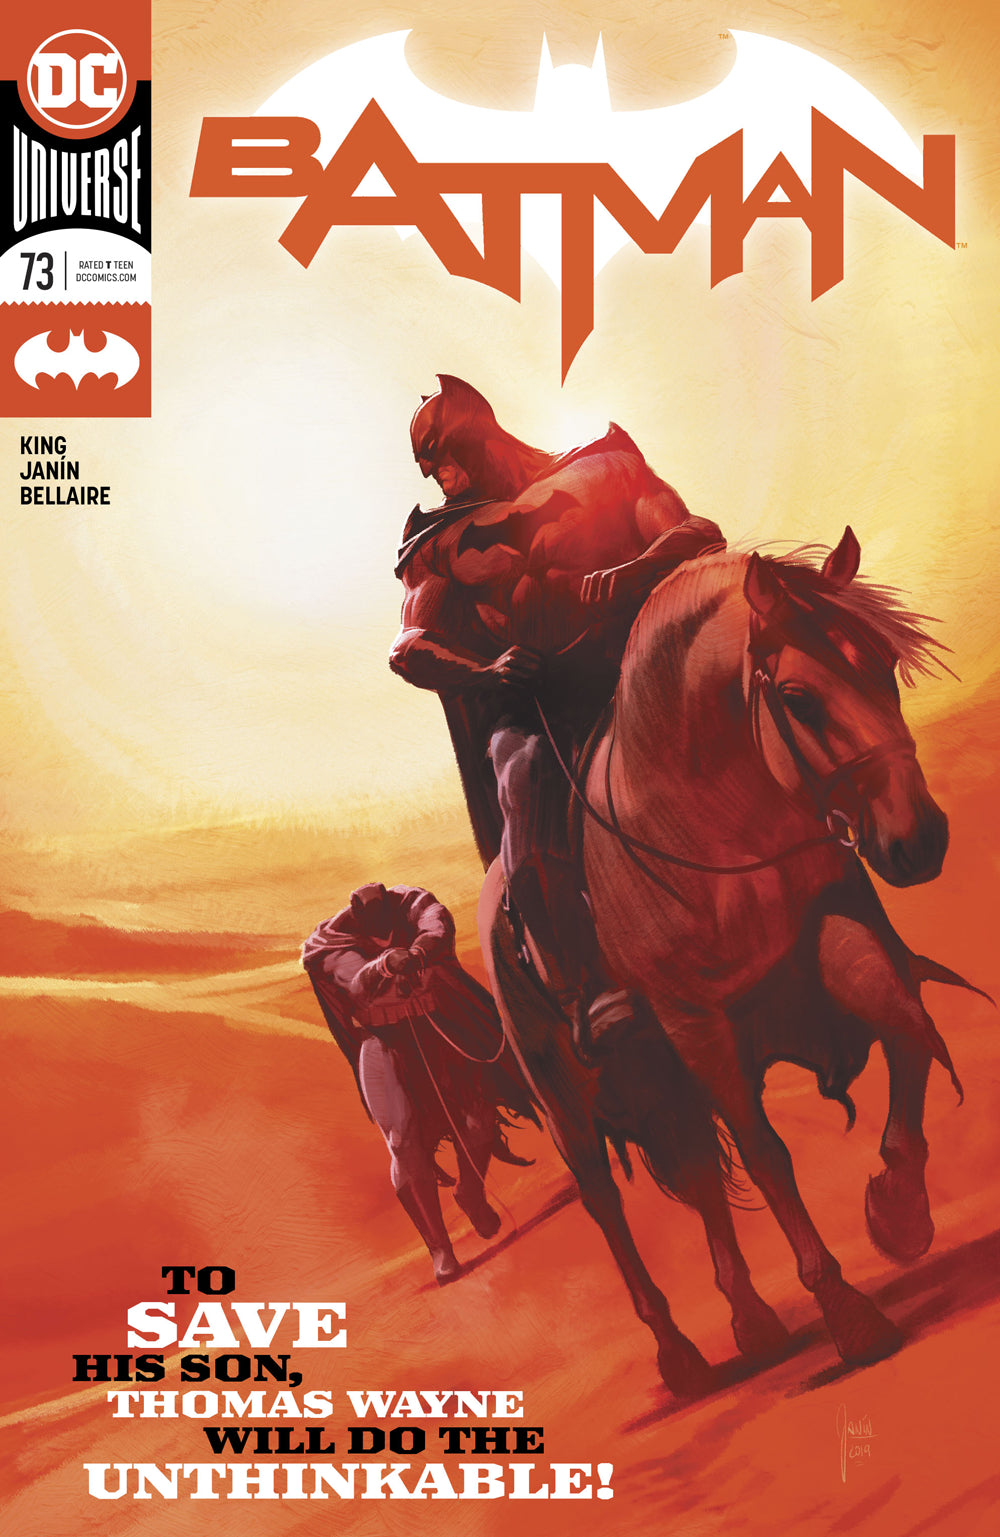 BATMAN #73 | L.A. Mood Comics and Games